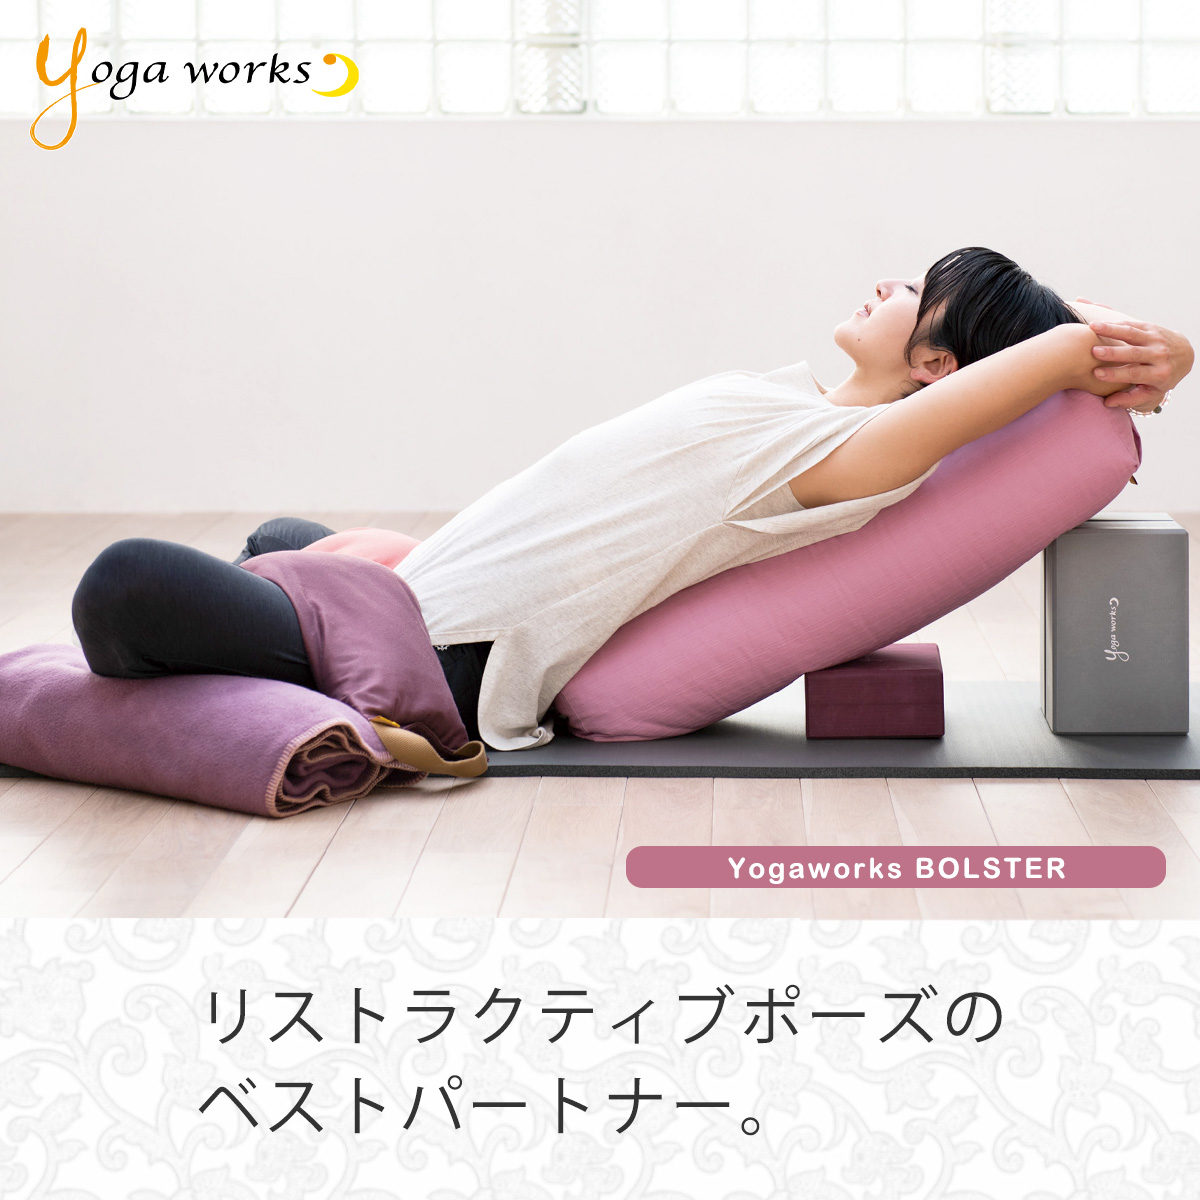 ヨガワークス ボルスター yogaworks プロップス 送料無料 瞑想 ヨガ